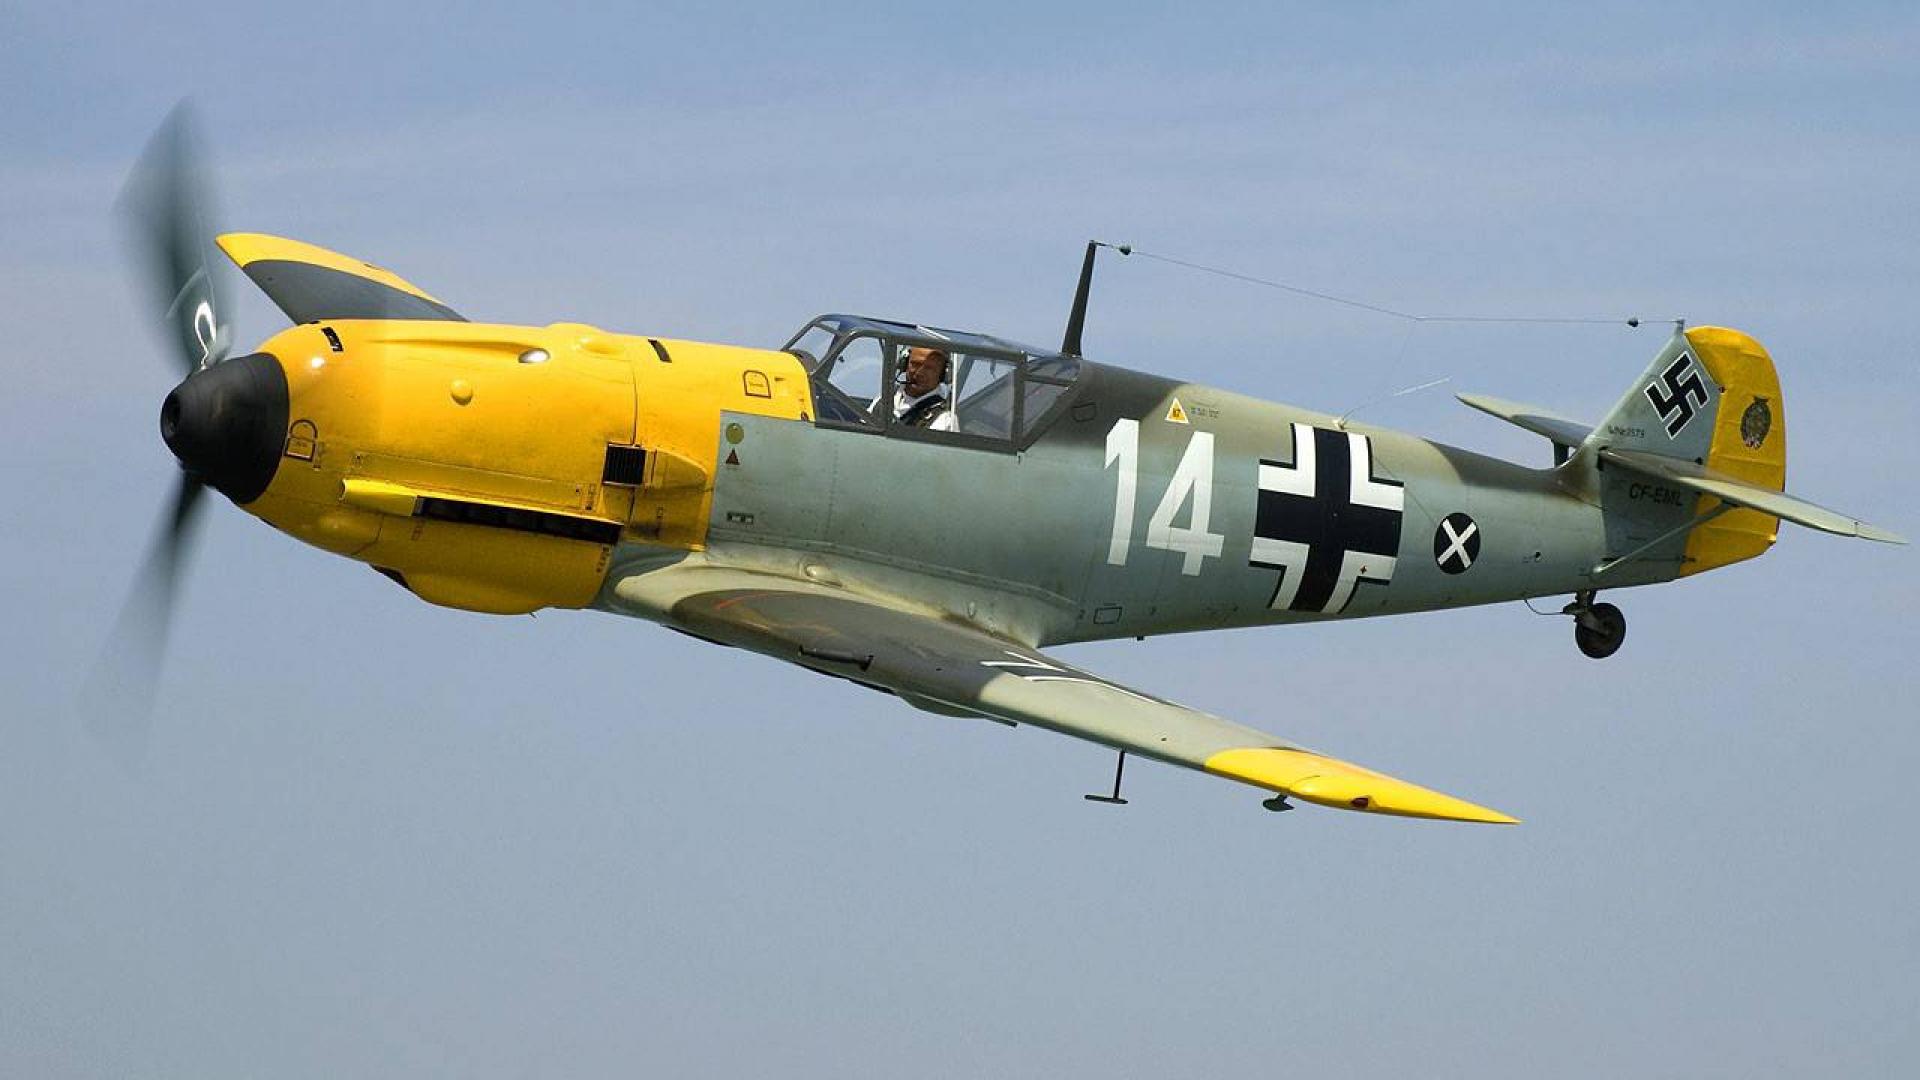 aircraft airplanes fighter messerschmitt world war ii luftwaffe